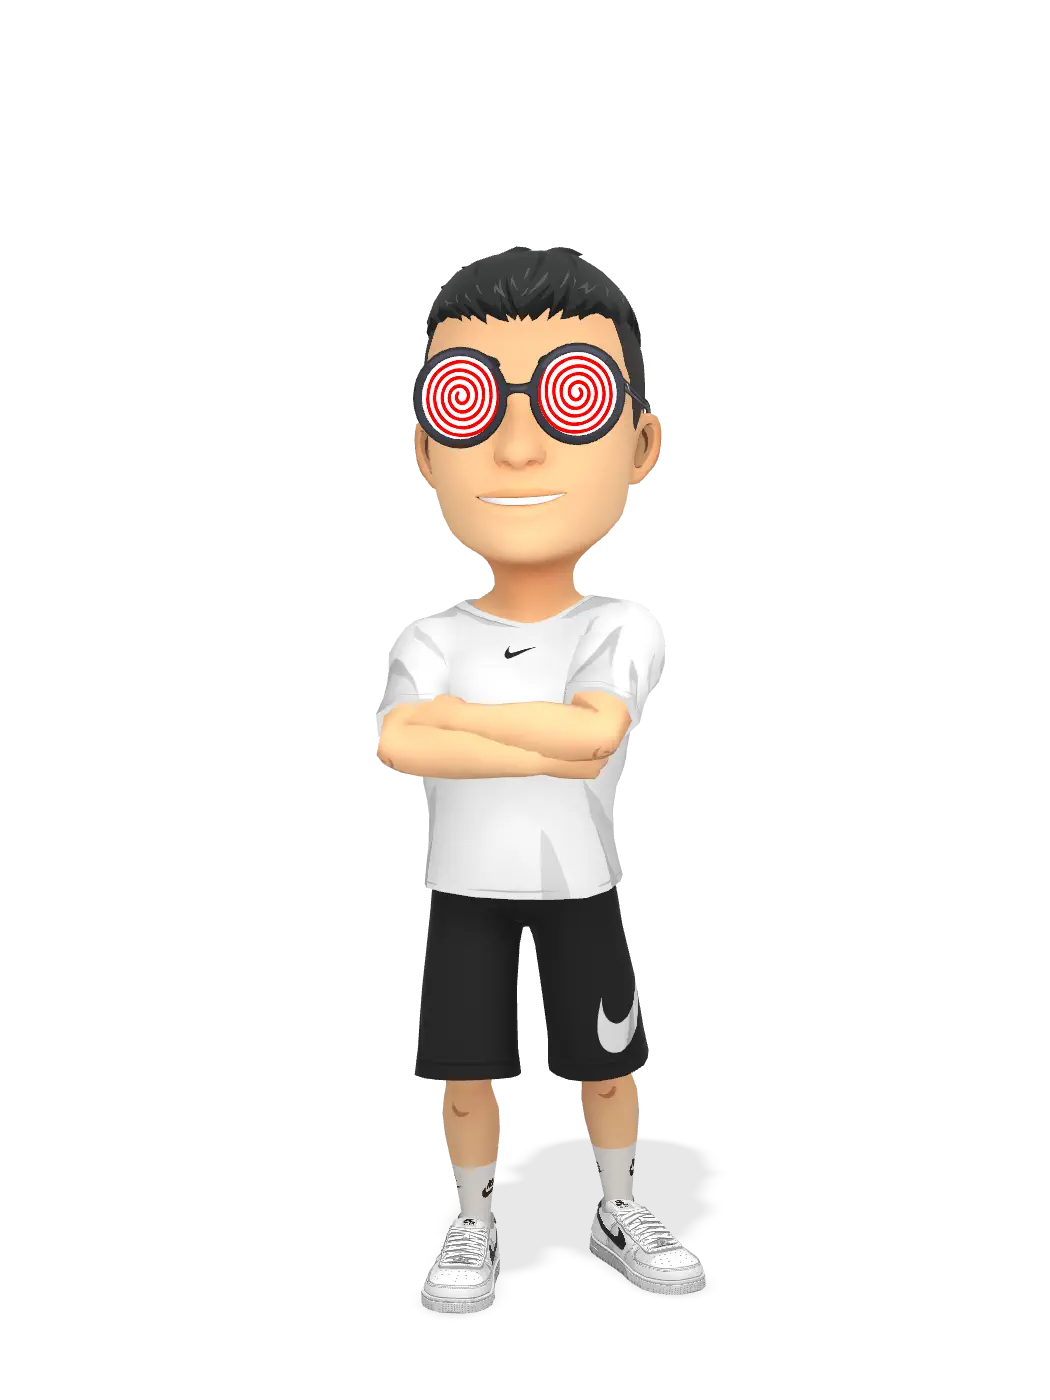 3D Bitmoji for obajdinn avatar